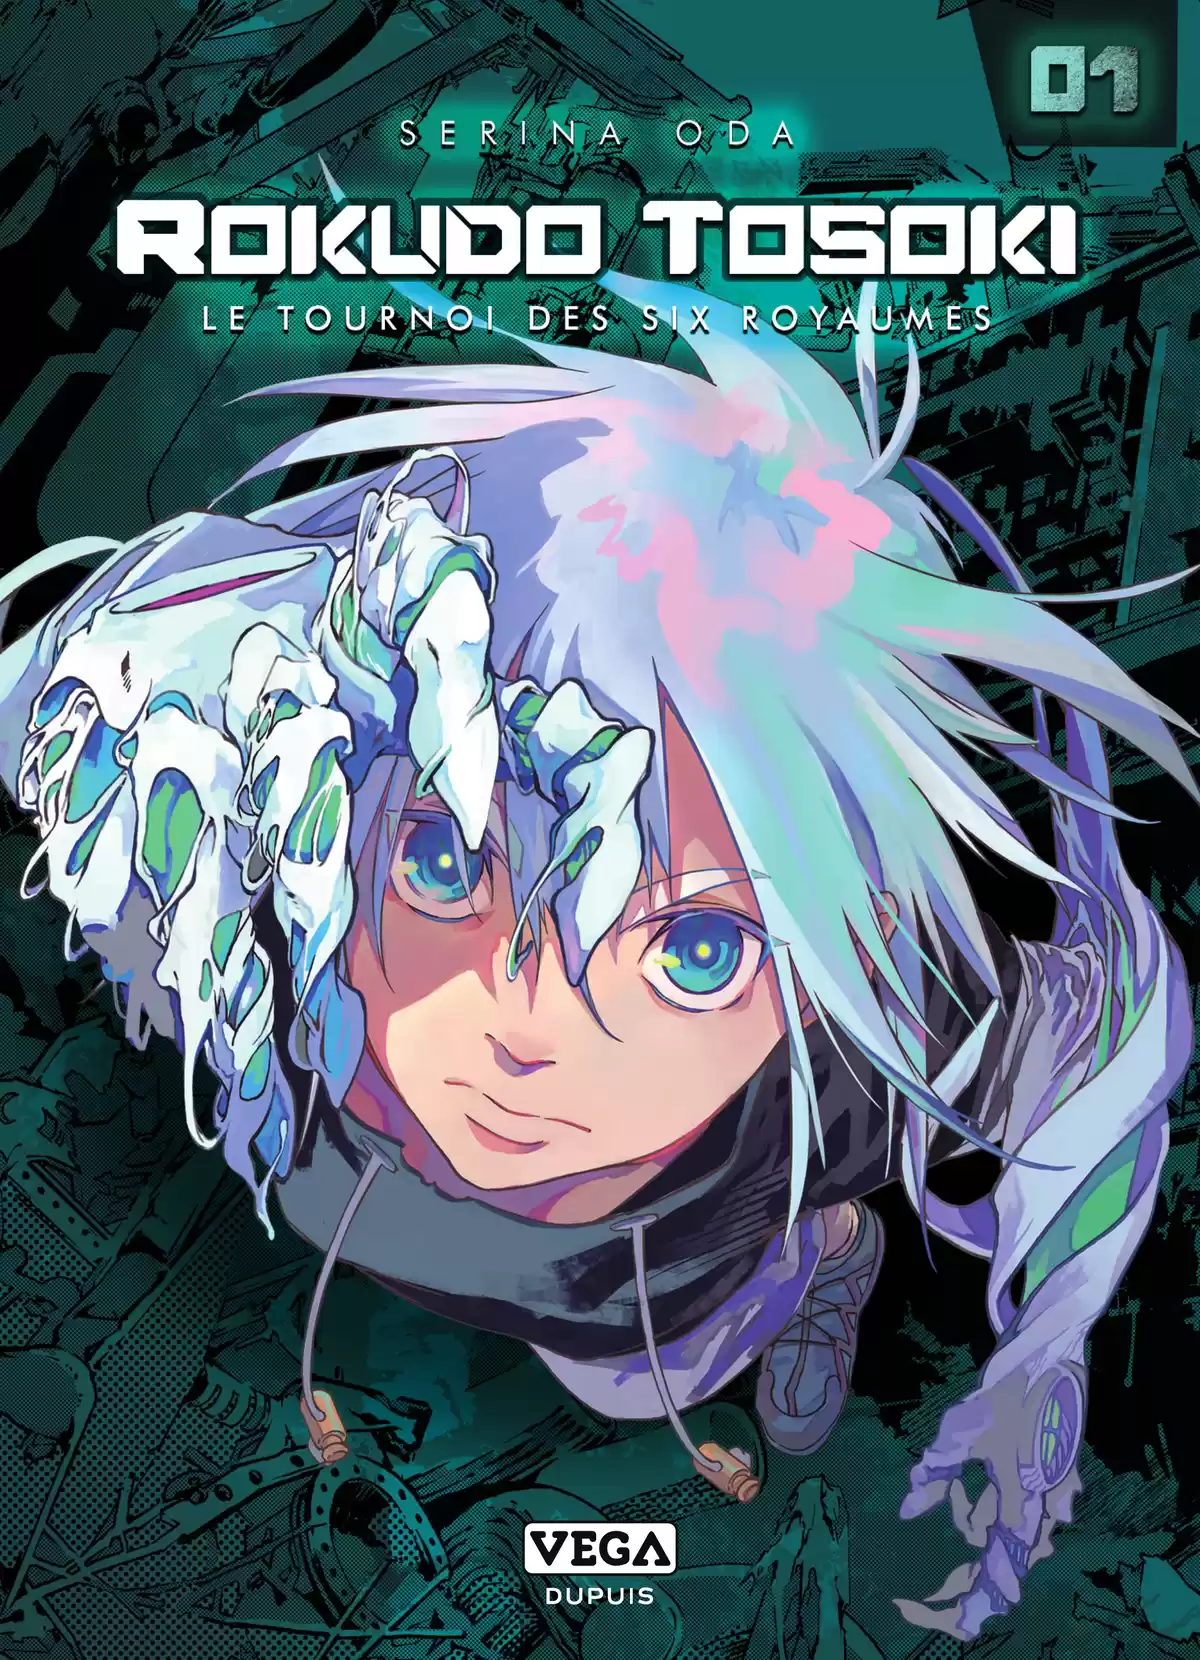 Rokudo Tosoki – Le Tournoi des six royaumes Volume 1 page 1